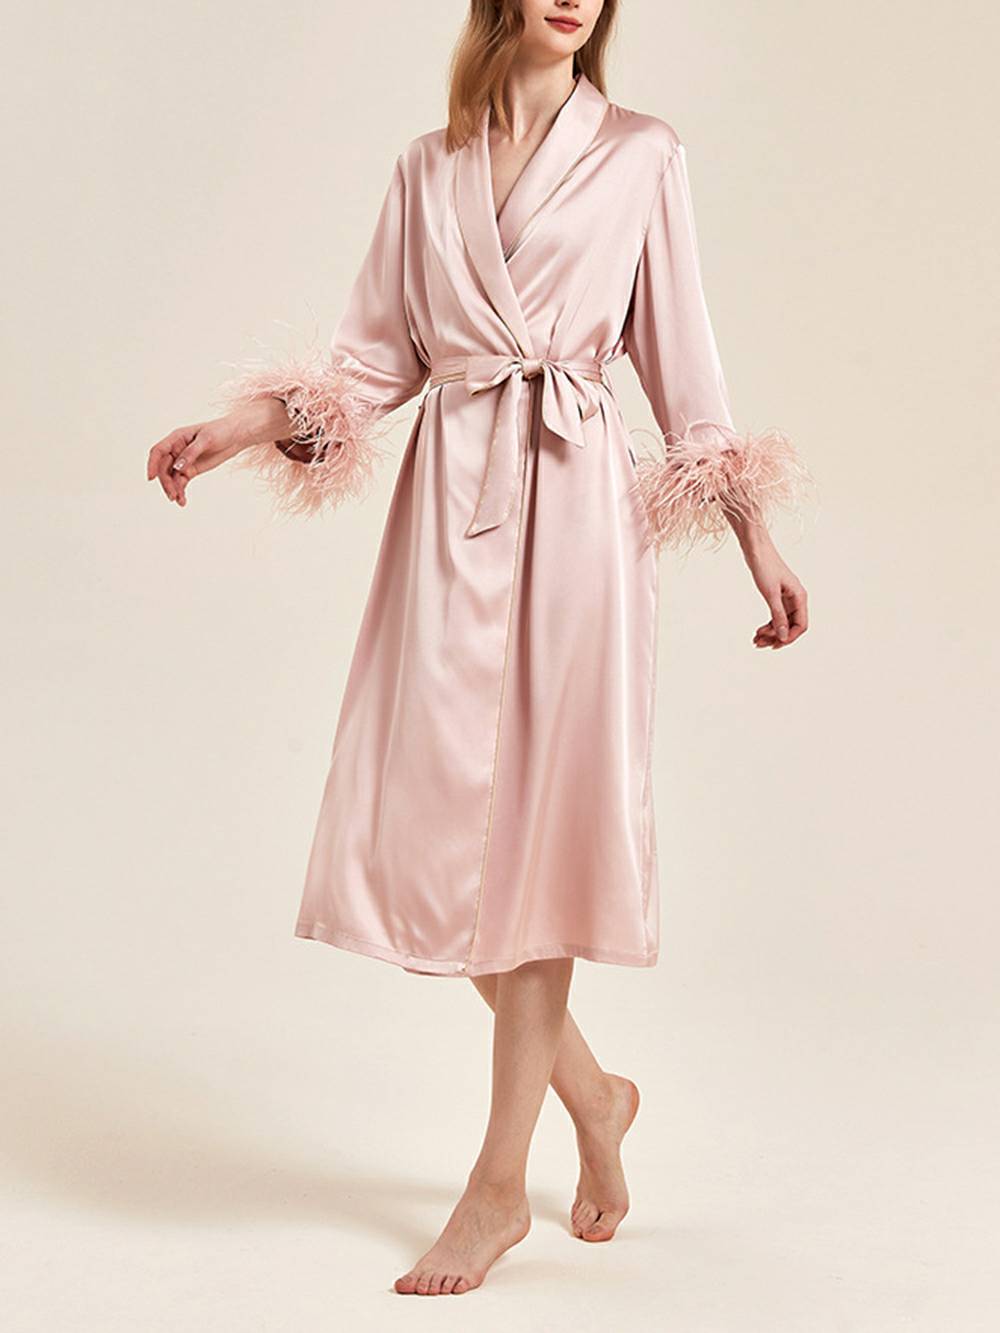 गुलाबी पंख वाला दुल्हन का वस्त्र